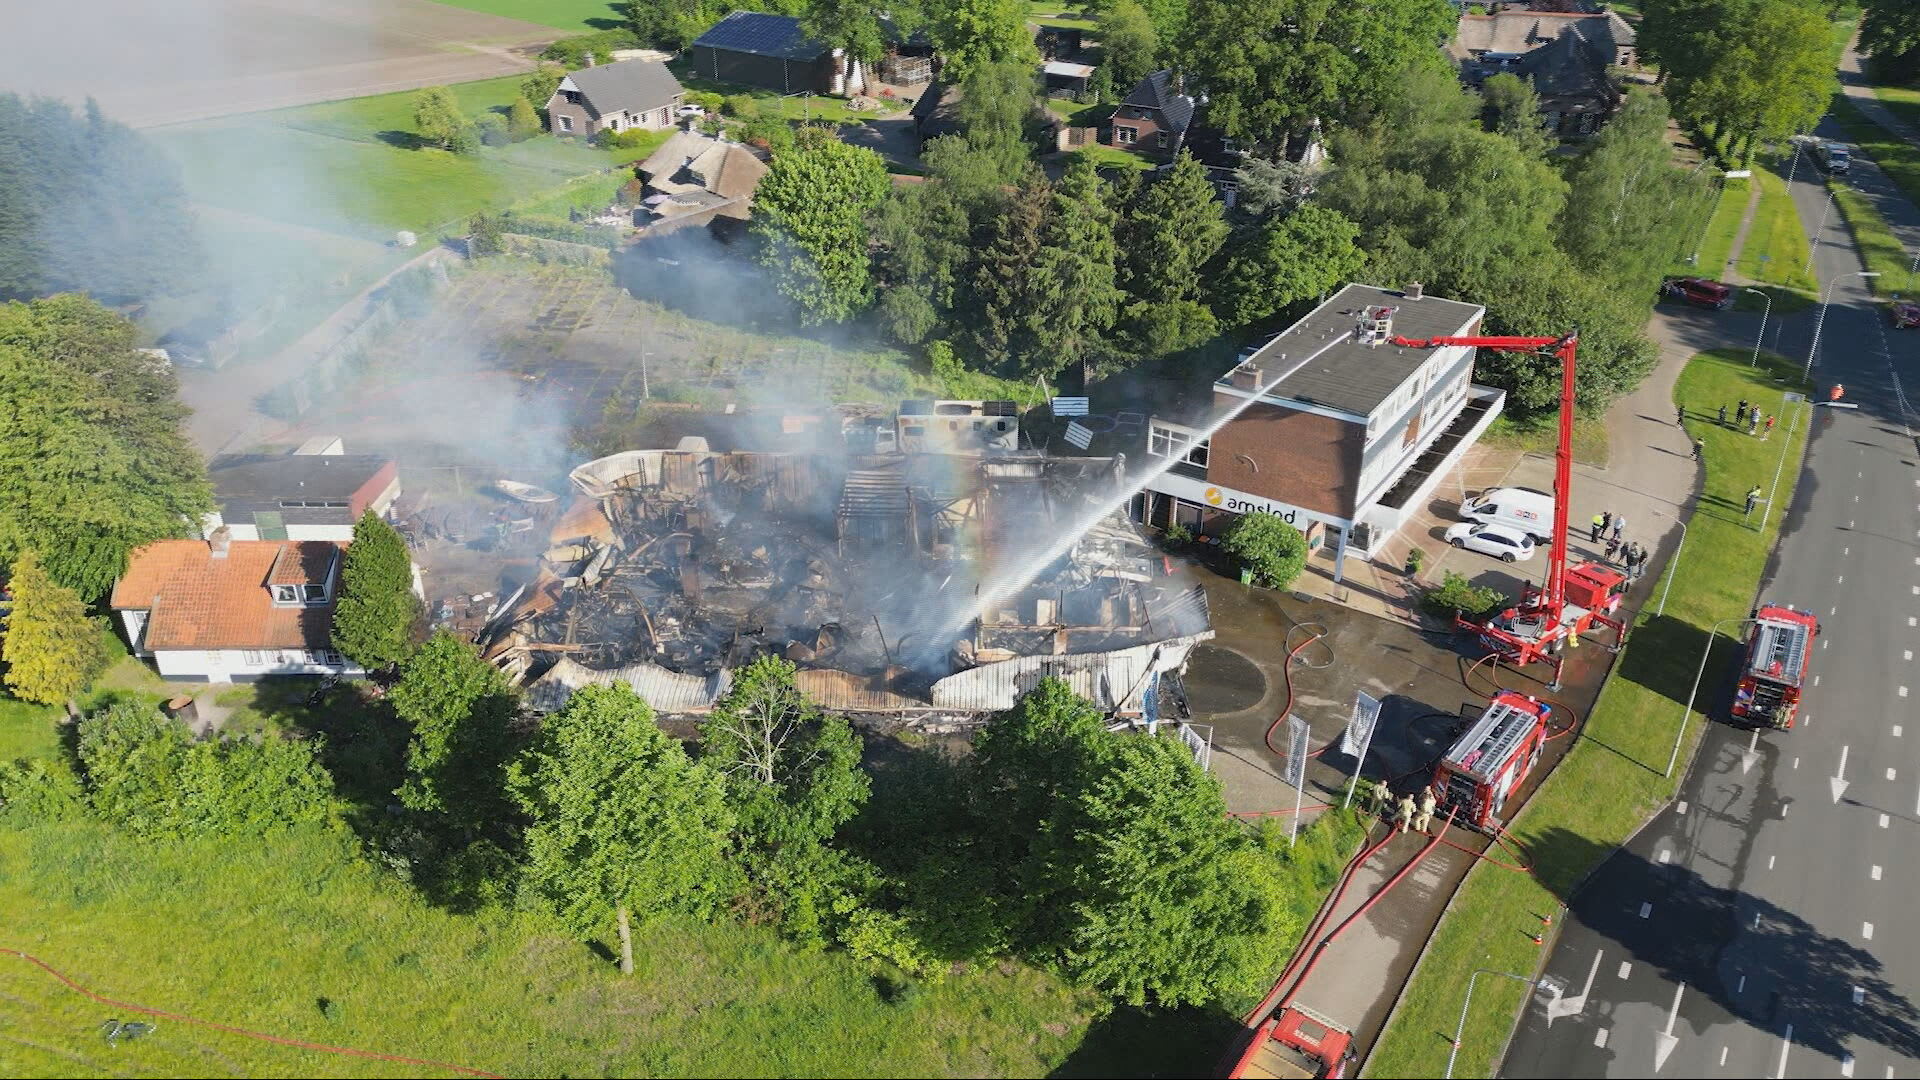 Pand in Emmen volledig verwoest door grote brand